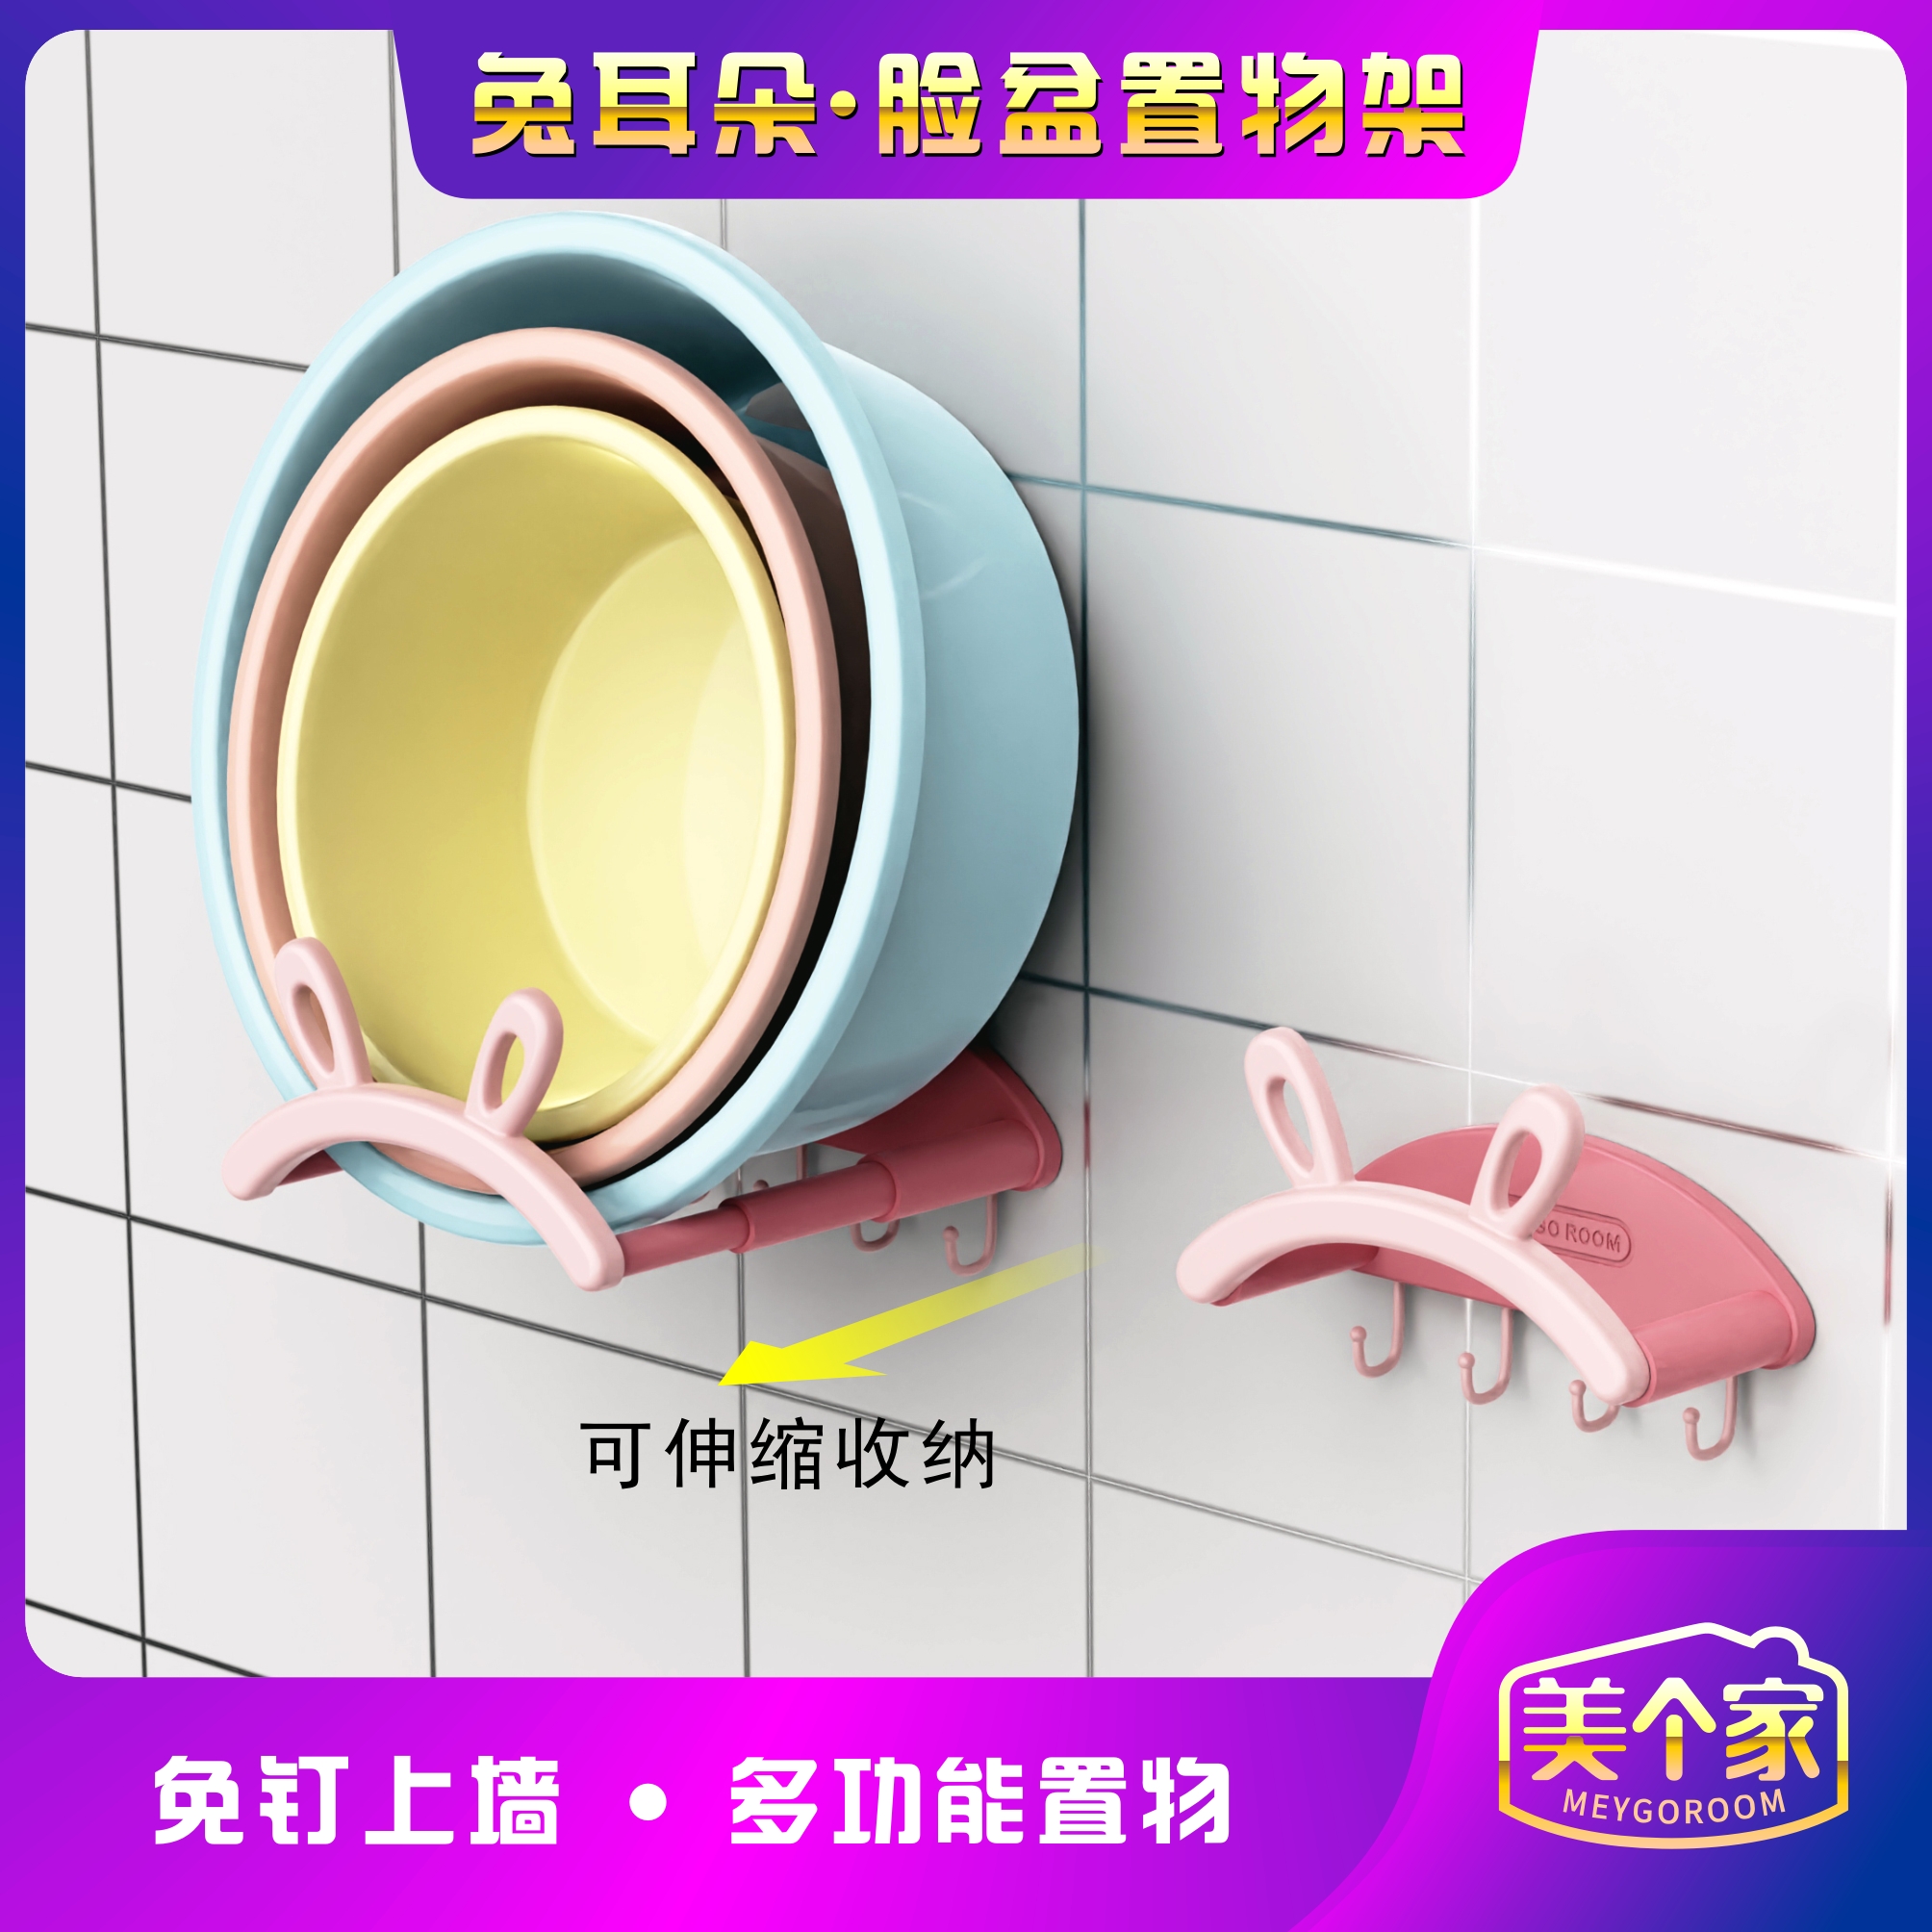 兔耳朵臉盆架可伸縮壁掛免打孔浴室置物架讓您輕鬆收納臉盆保持浴室整潔 (8.4折)